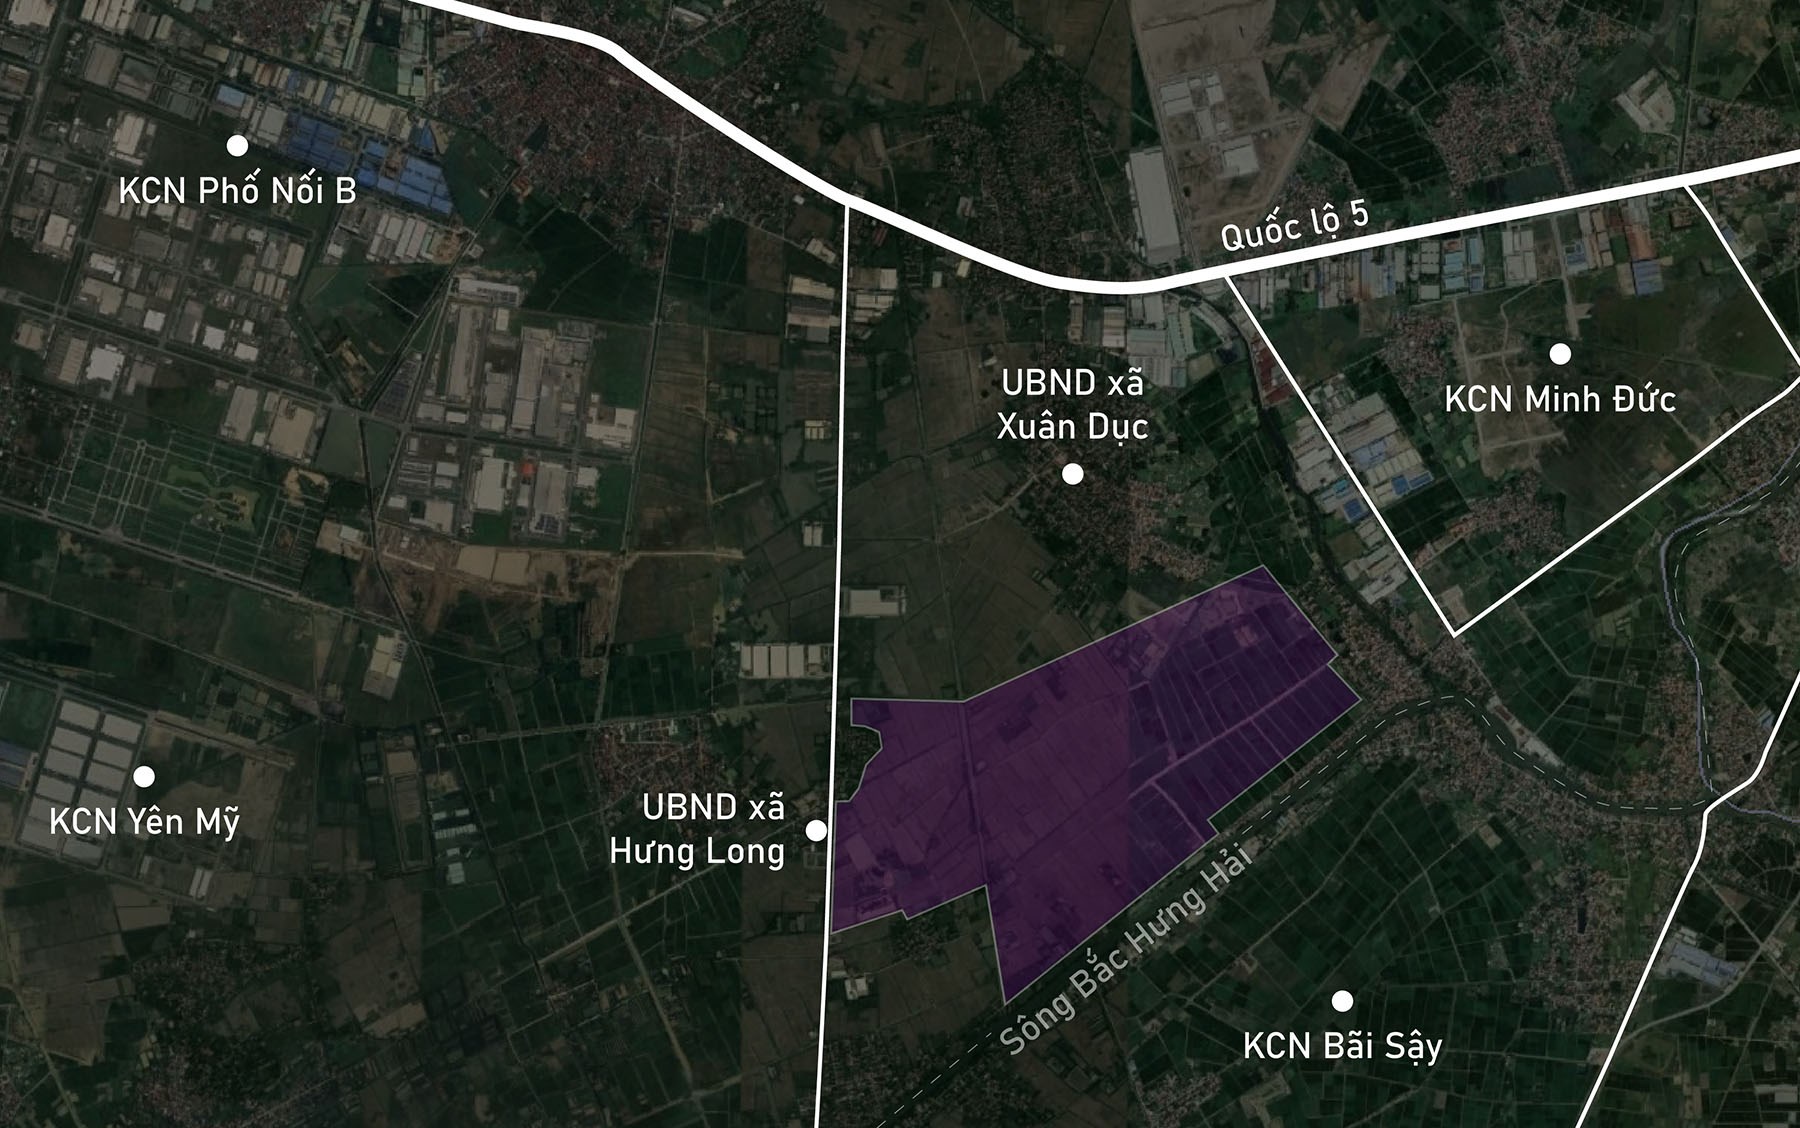 Toàn cảnh vị trí dự kiến quy hoạch KCN Hưng Long - Ngọc Lâm - Xuân Dục ở Mỹ Hào, Hưng Yên rộng khoảng 250 ha